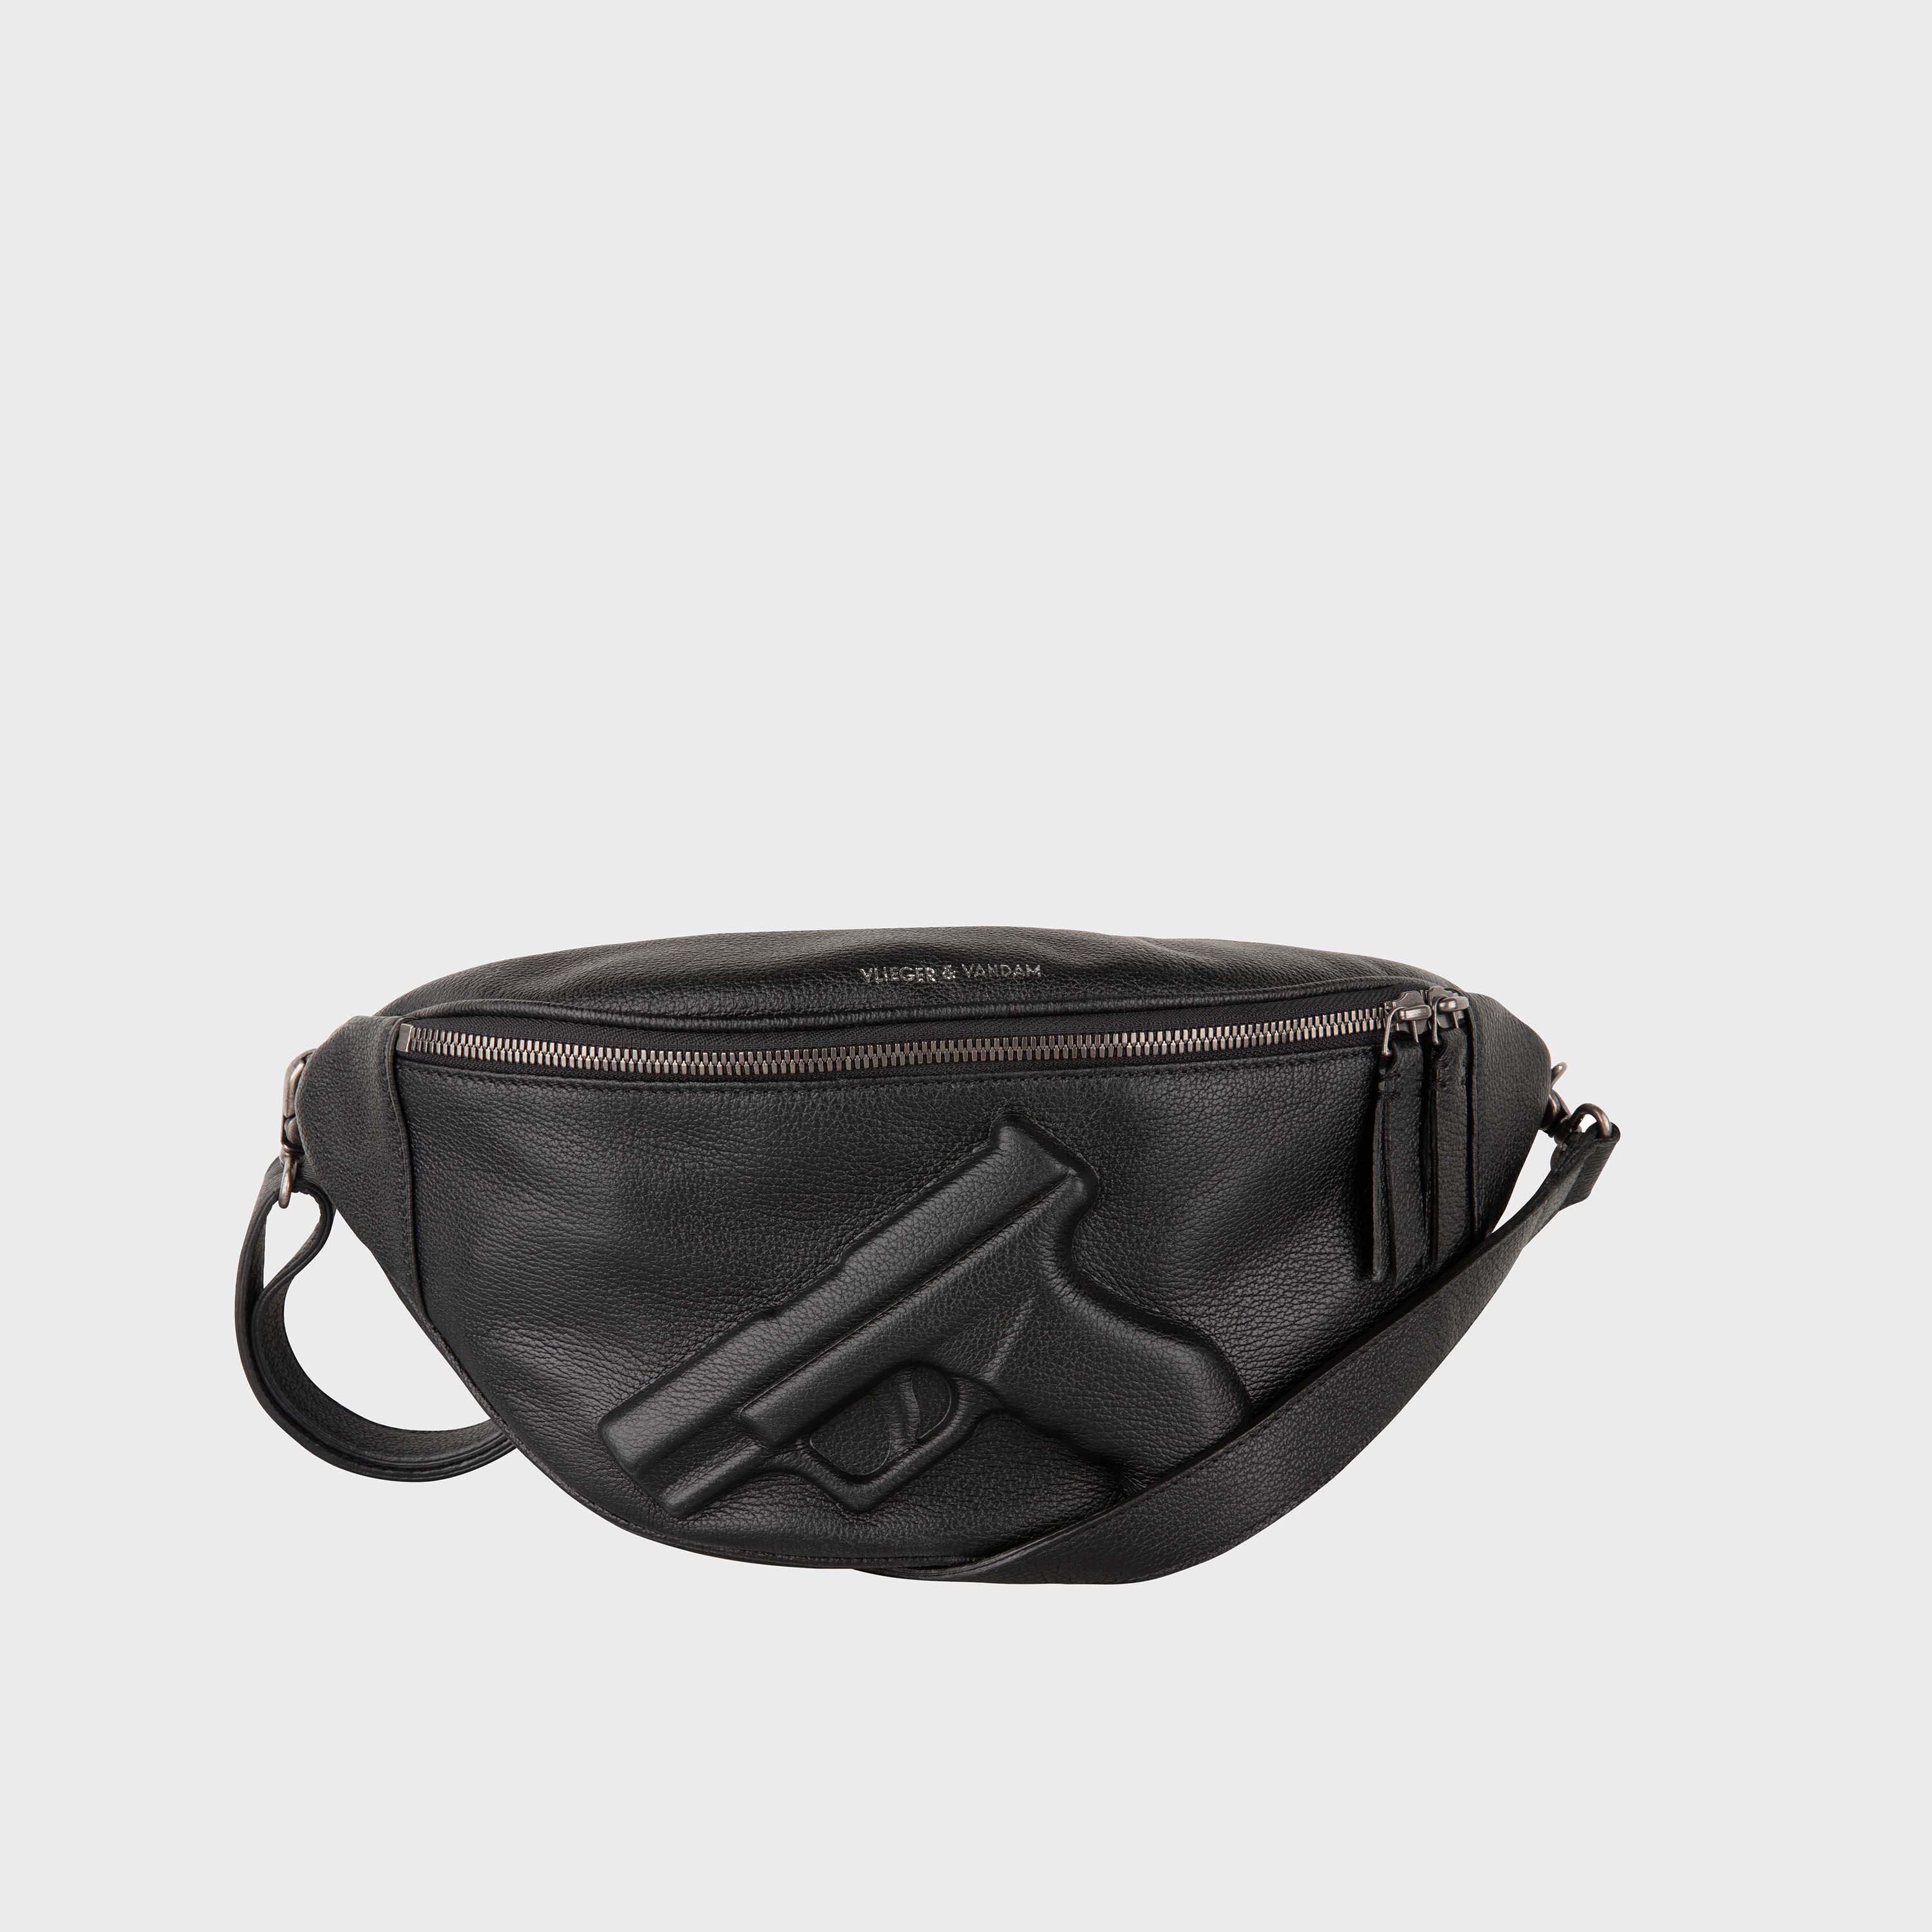 Black Leather Fanny Pack Men Black Leather Hip Bag SALE 